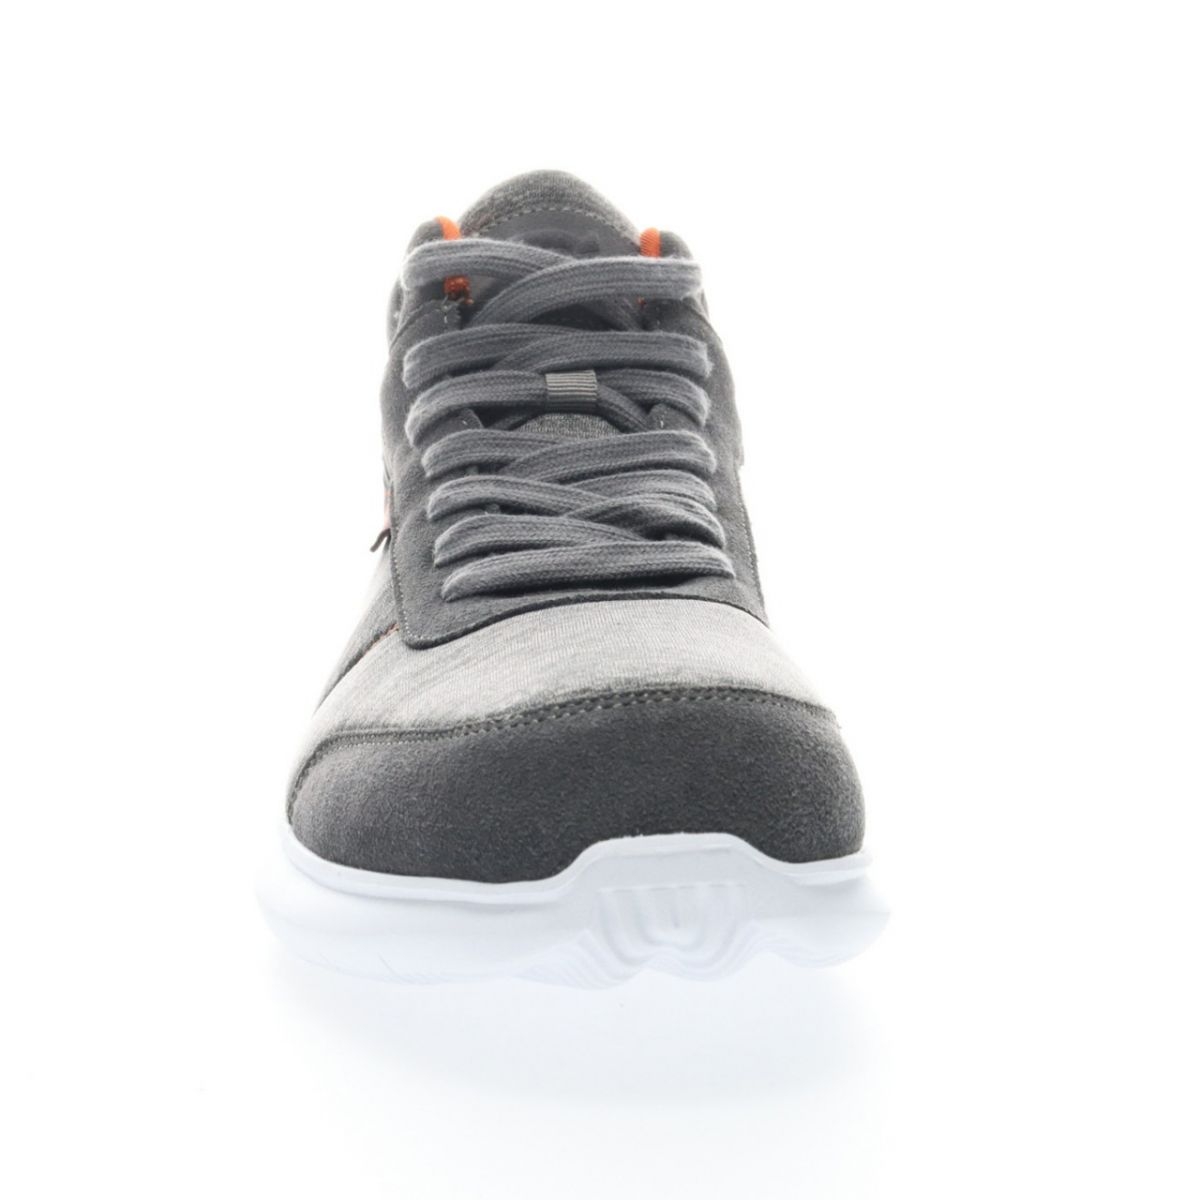 Propet Men's Viator Hi Sneaker Grey/Orange - MAA112MGOR Grey/orange - Grey/orange, 10.5 X-Wide